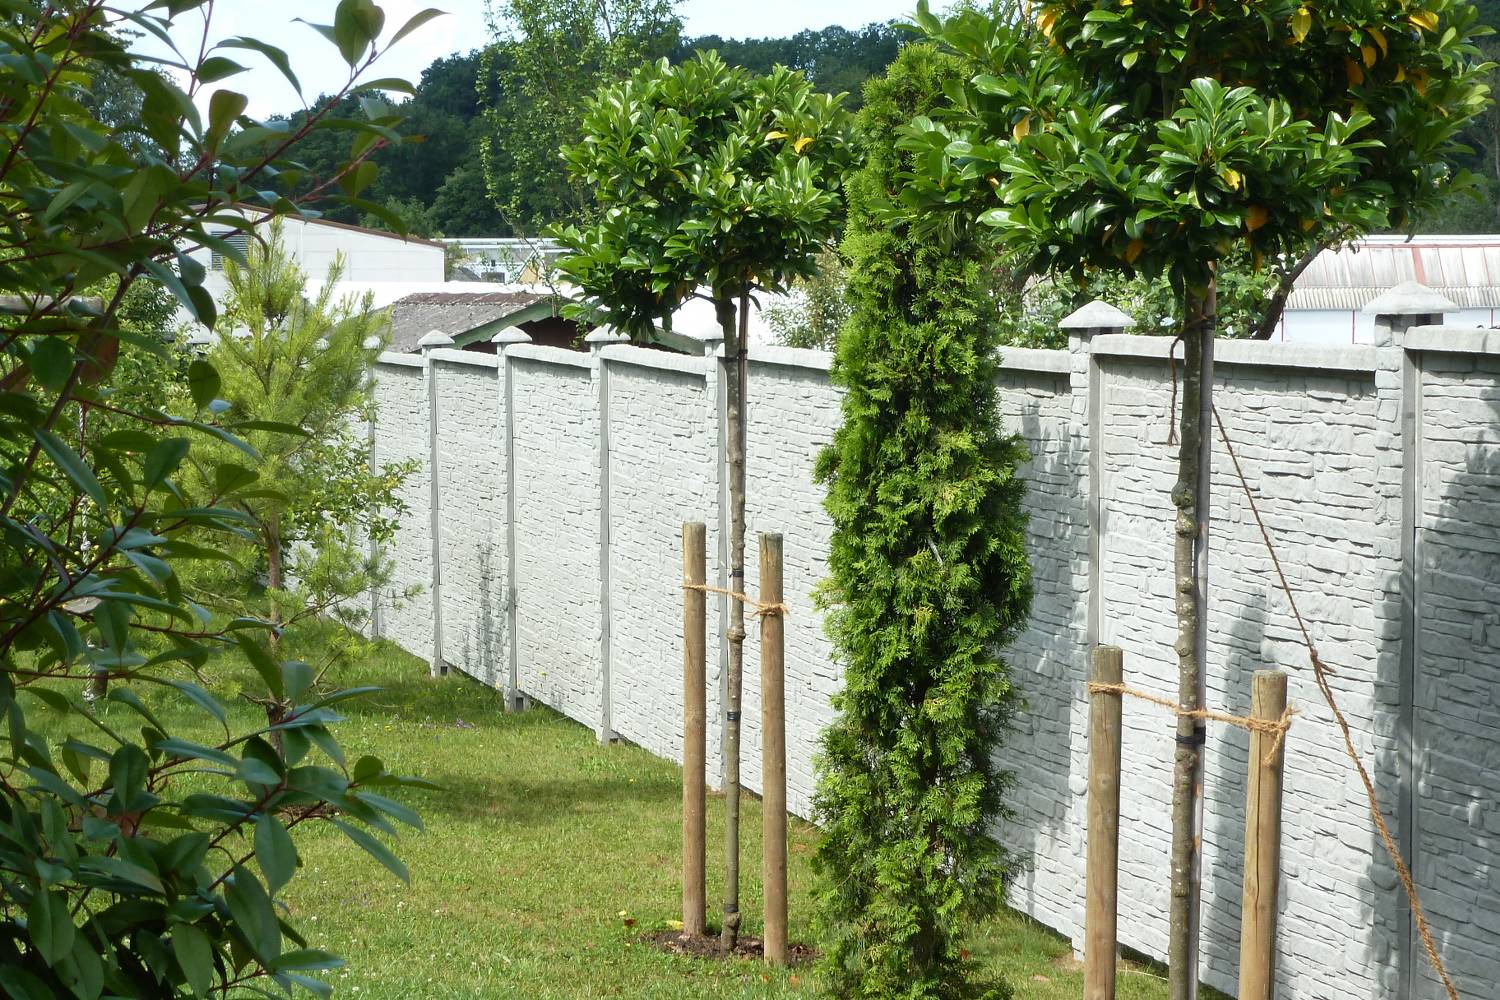 Jednostranné betónové ploty